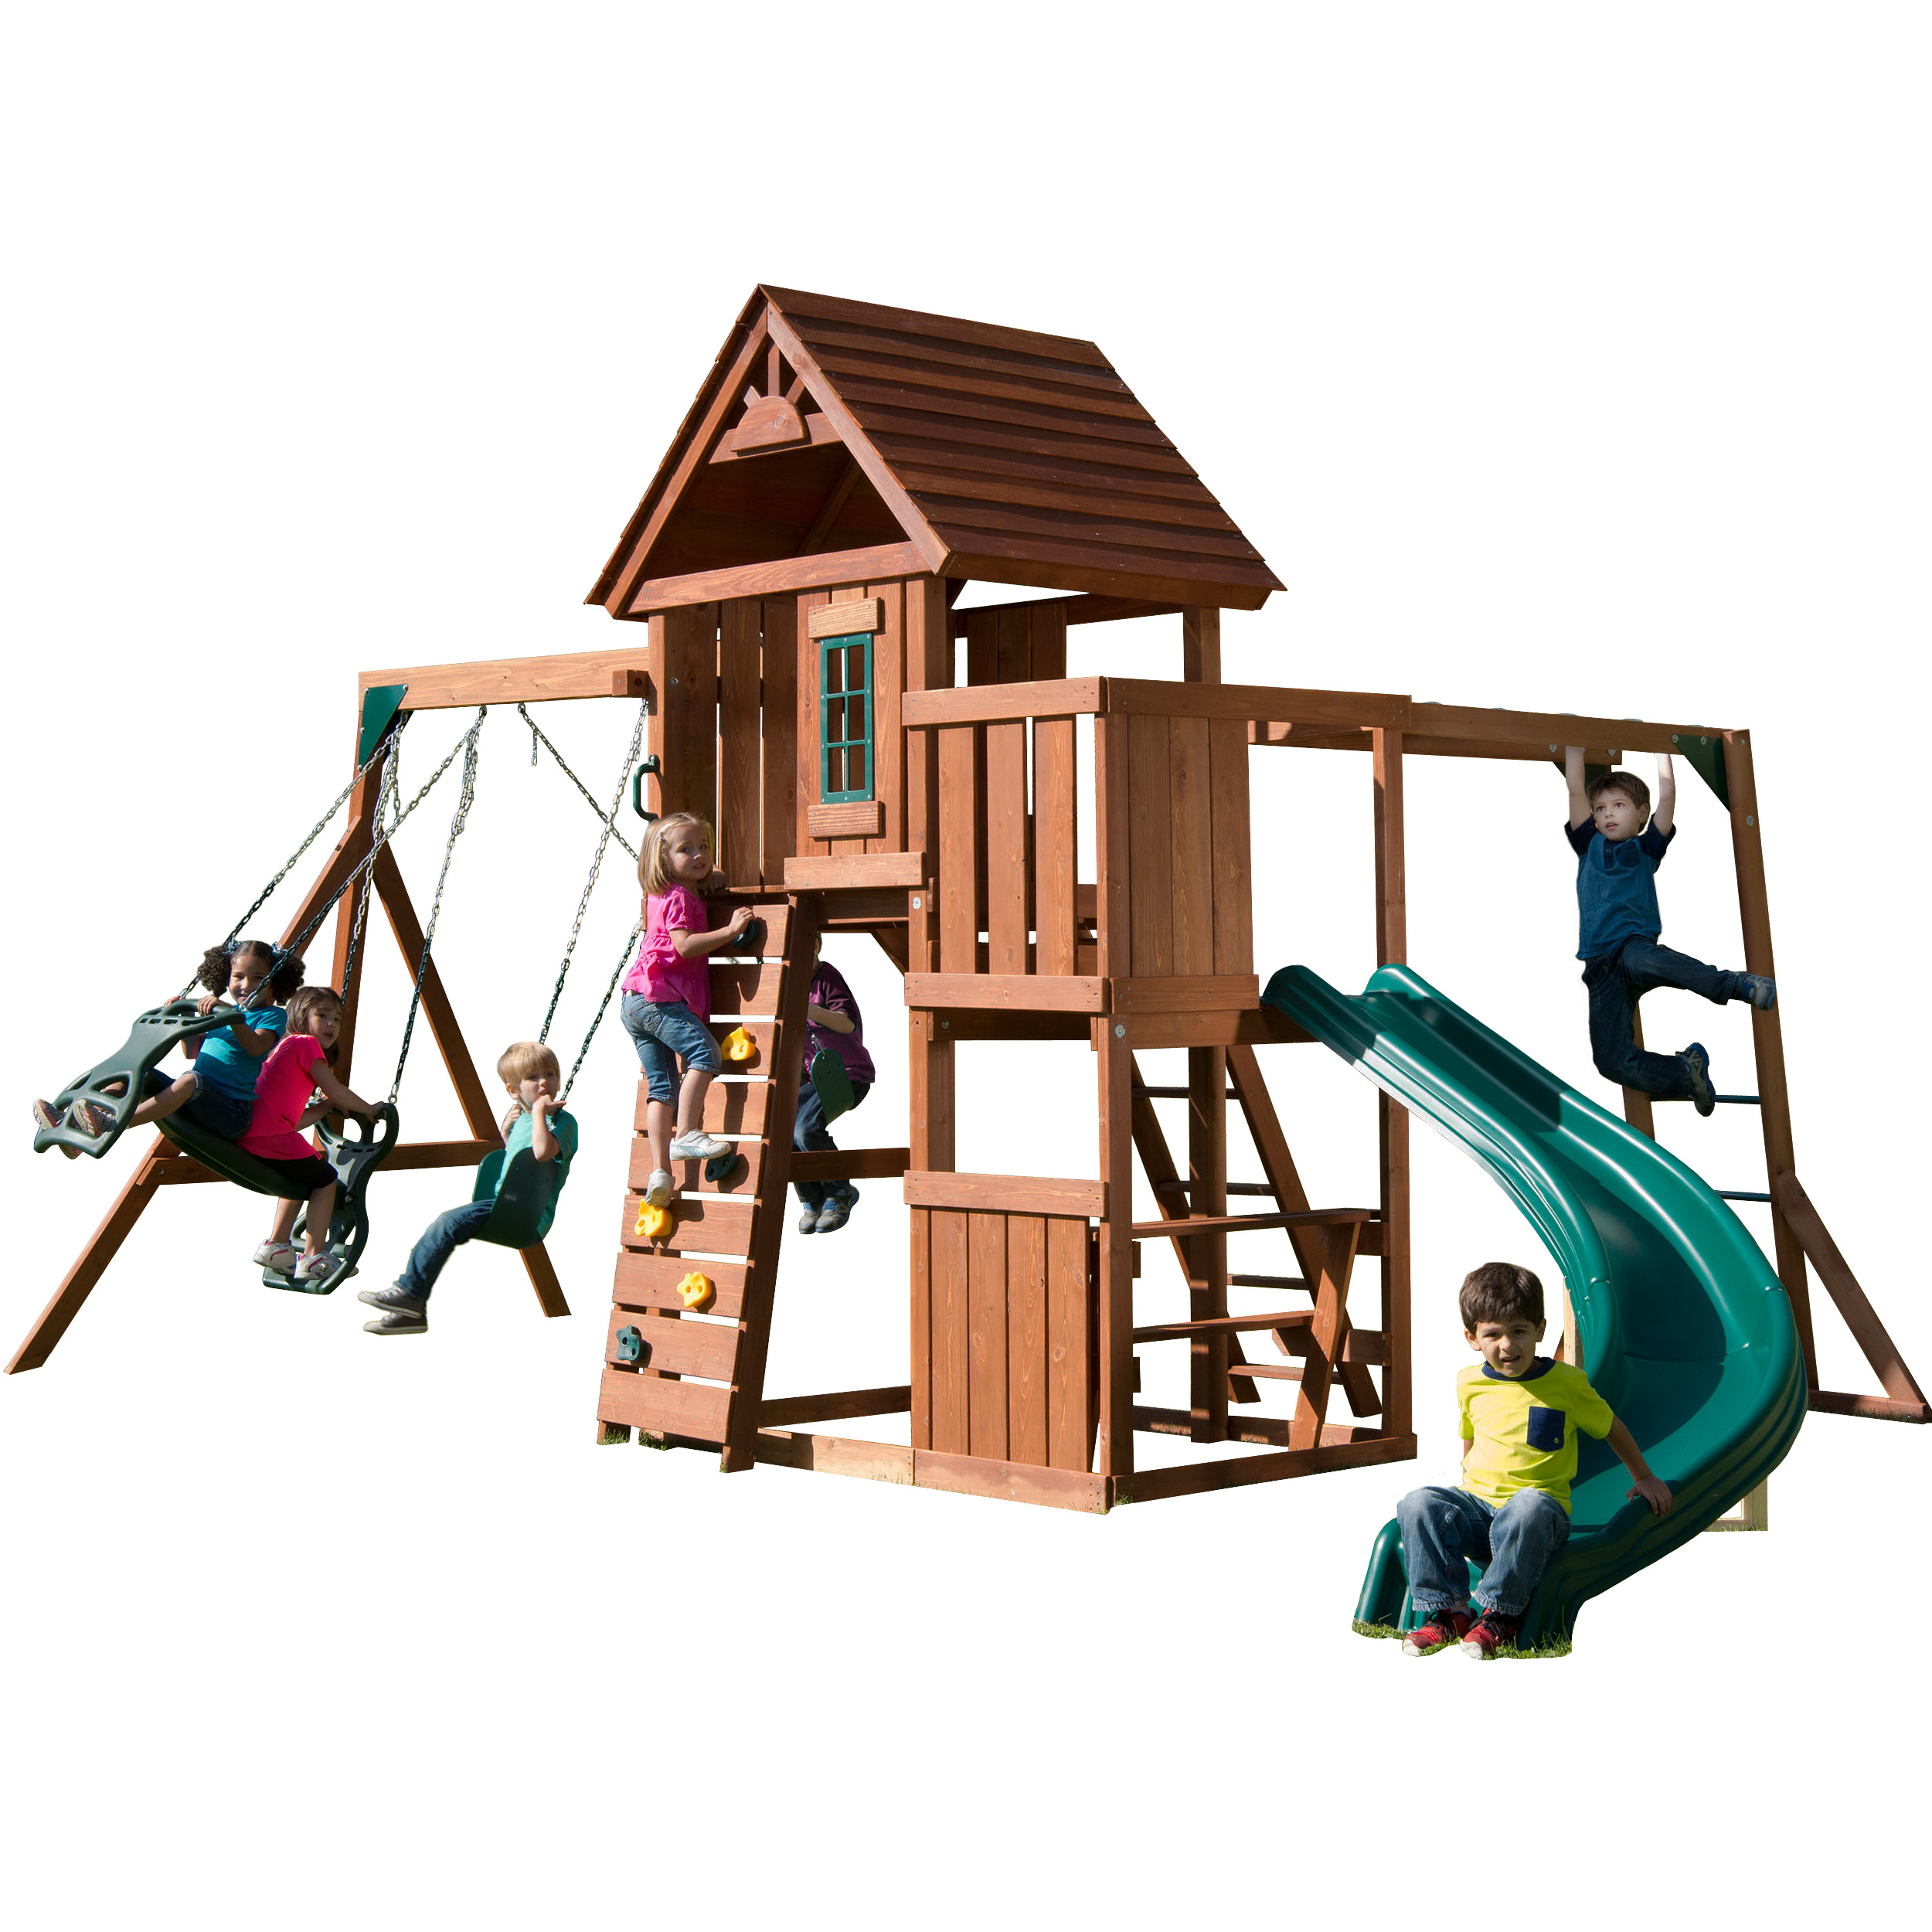 Swing-N-Slide Cedar Brook Wooden Backyard Play Set with Monkey Bars, Swings, and Curved Slide - image 1 of 6